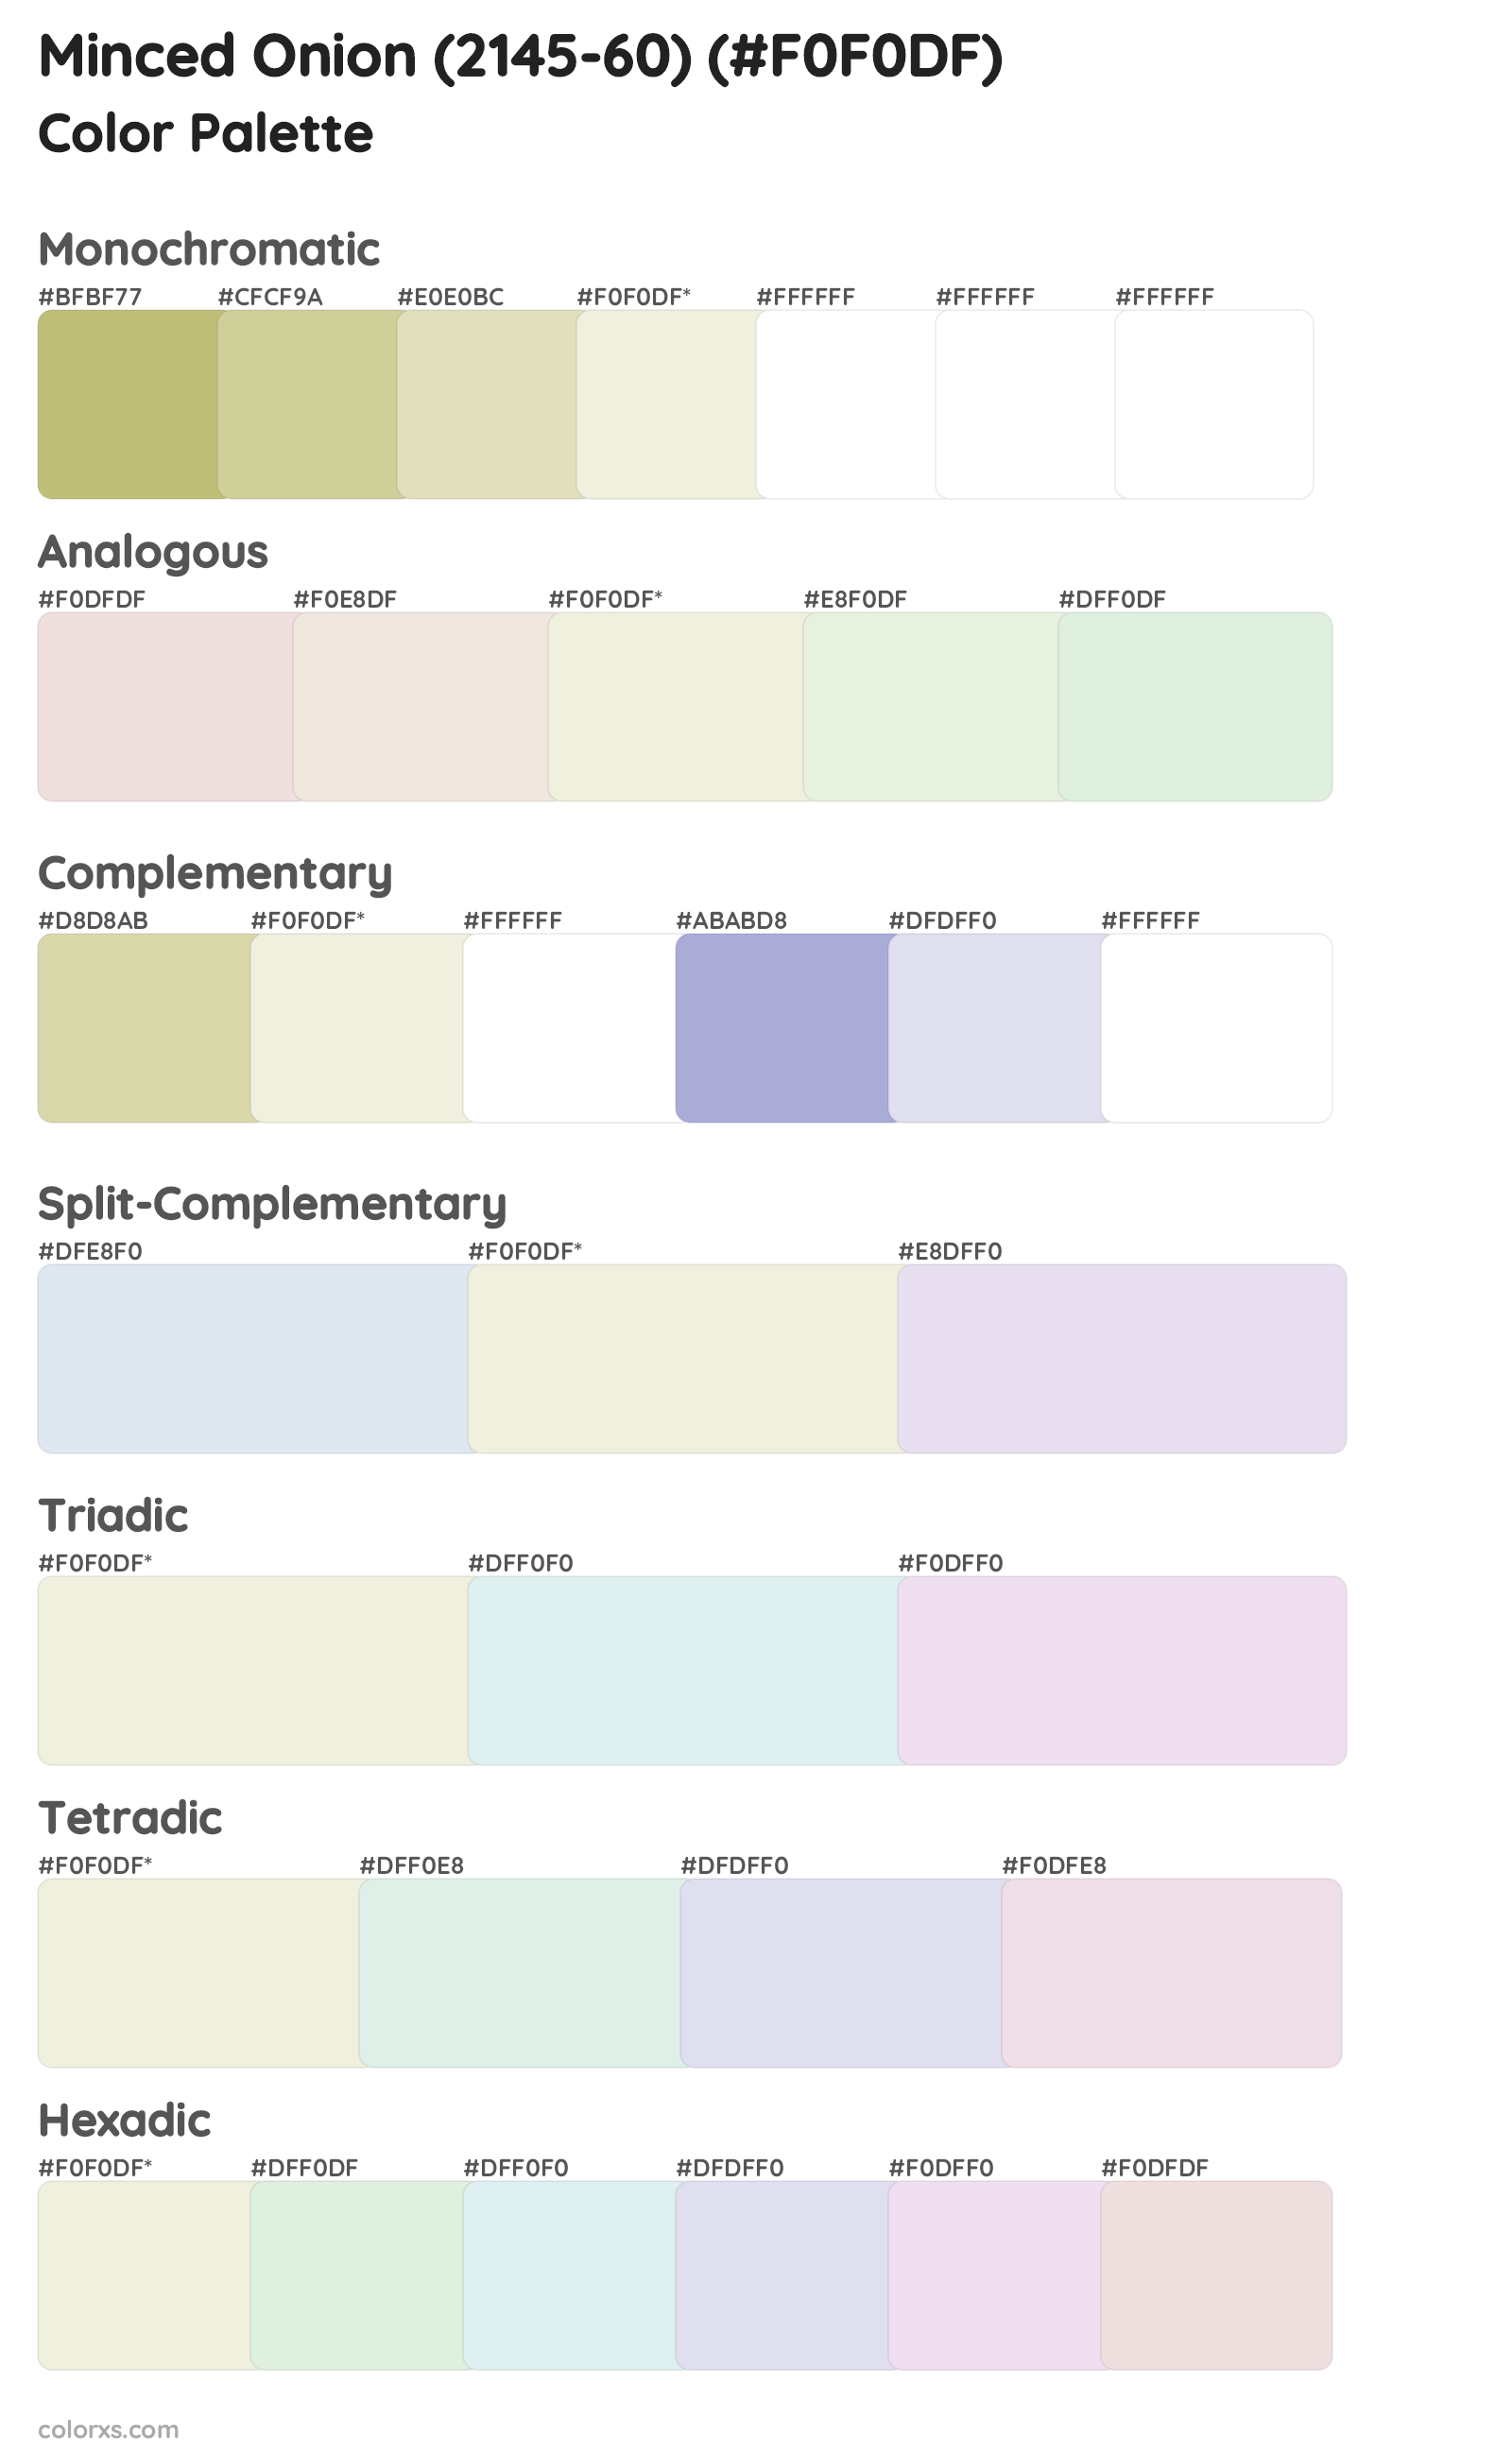 Minced Onion (2145-60) Color Scheme Palettes